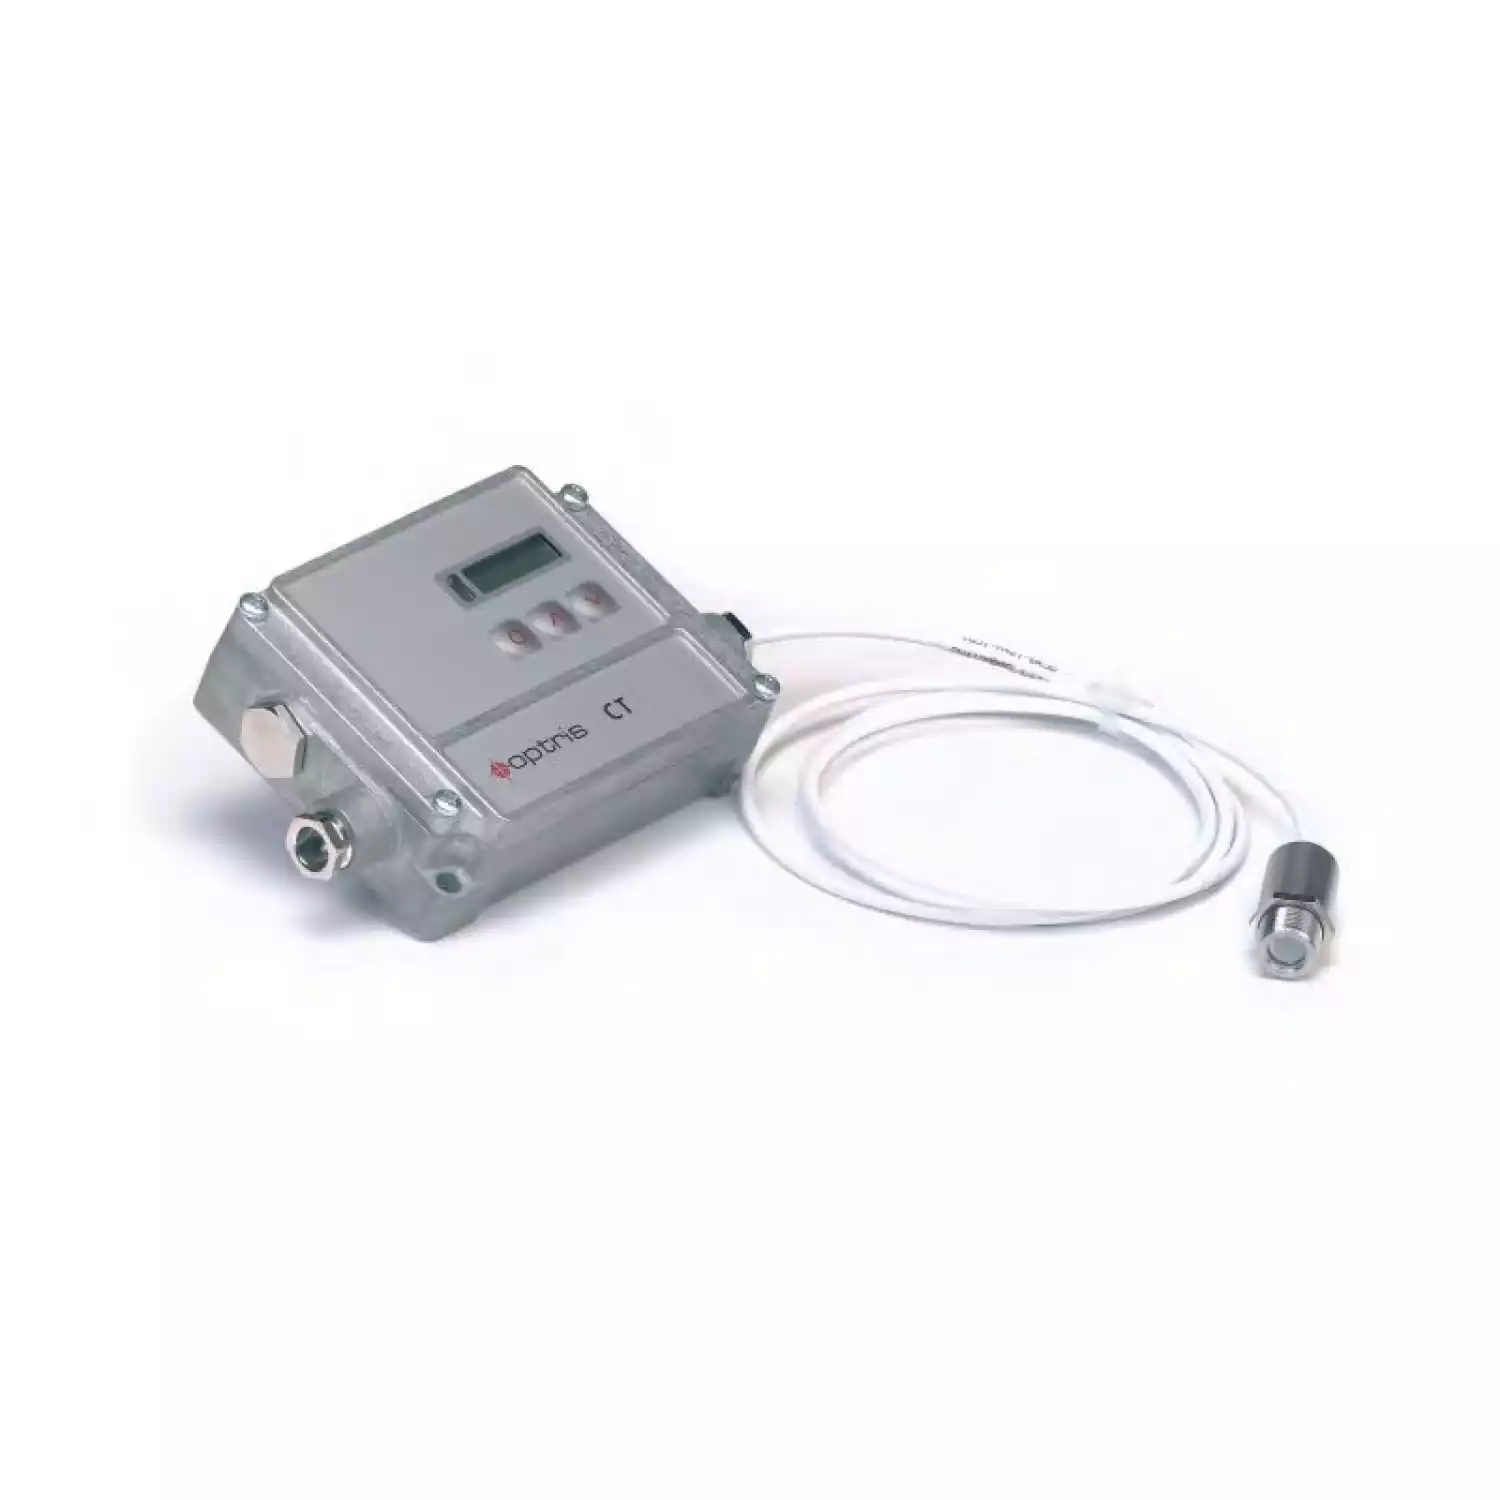 ИК термометр Optris CT fast - 1